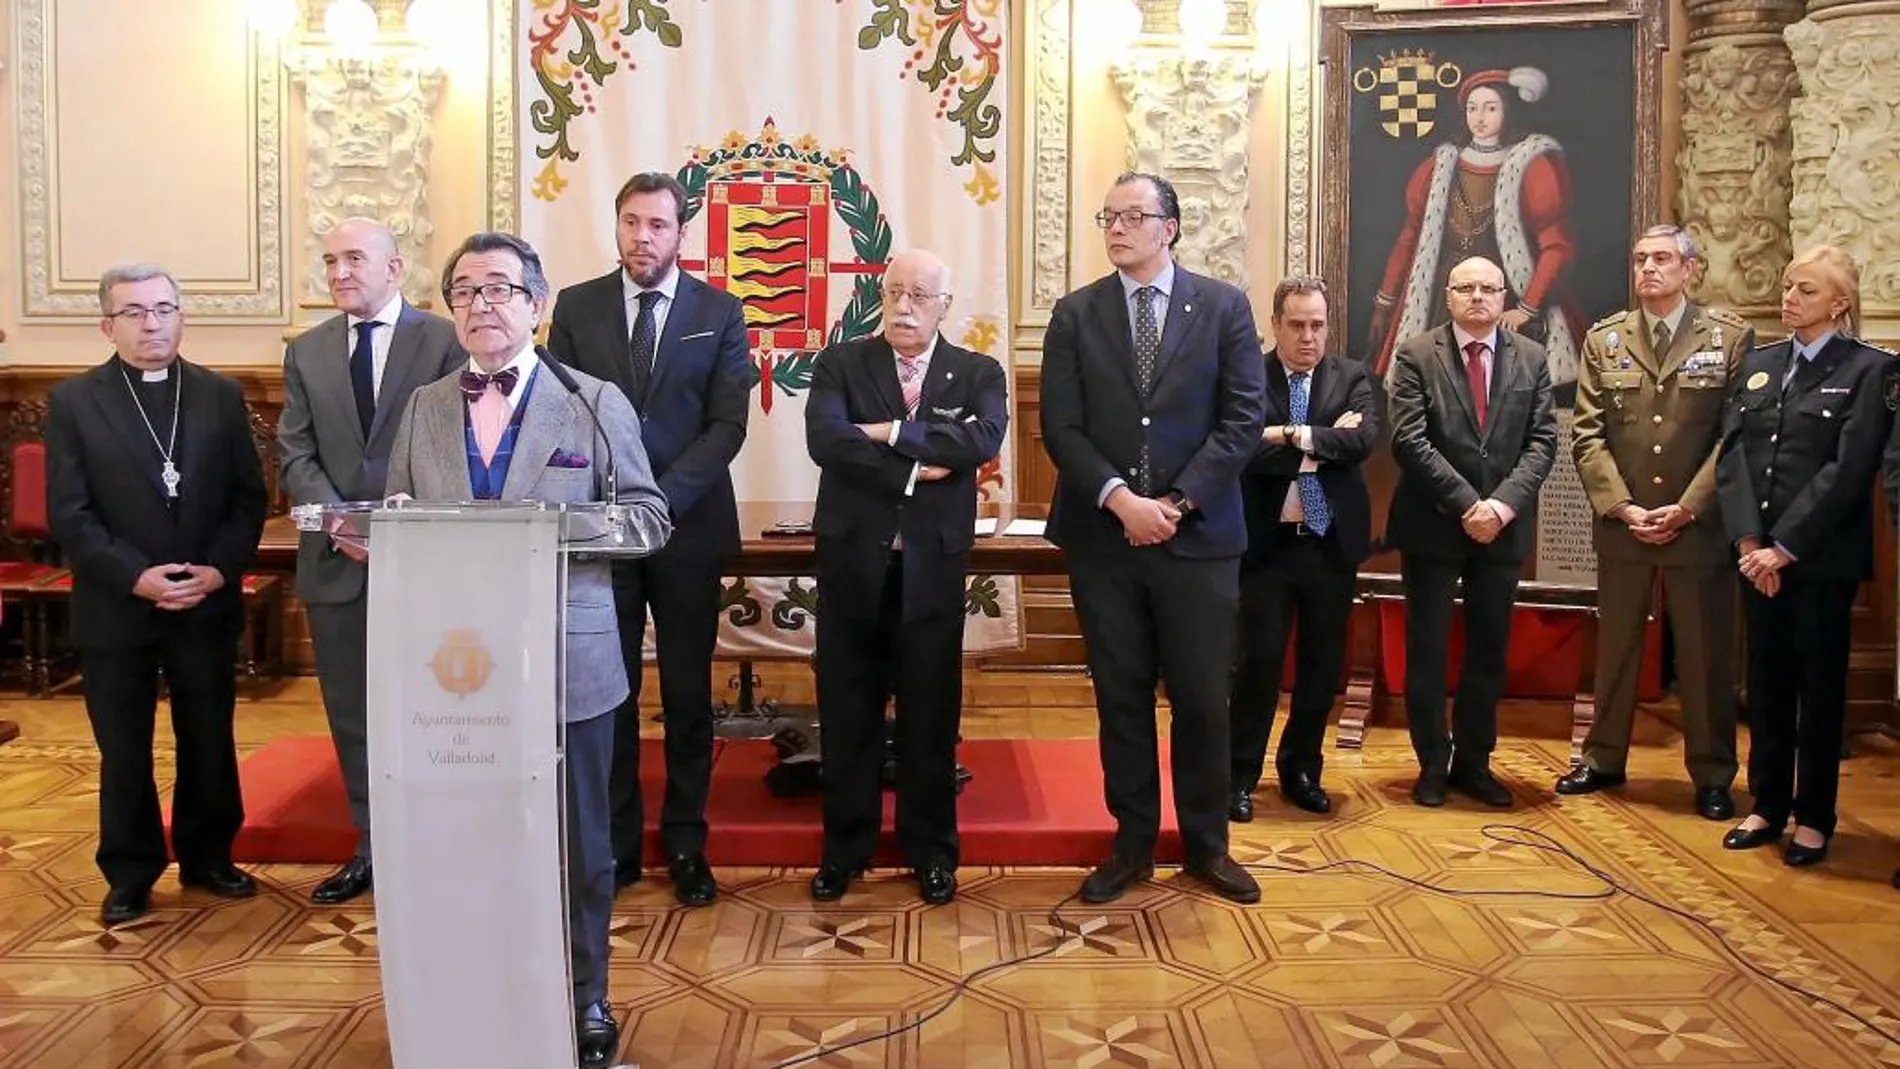 Enrique Cornejo interviene en el acto en presencia de Argüello, Carnero, Óscar Puente y Felipe Esteban, entre otros